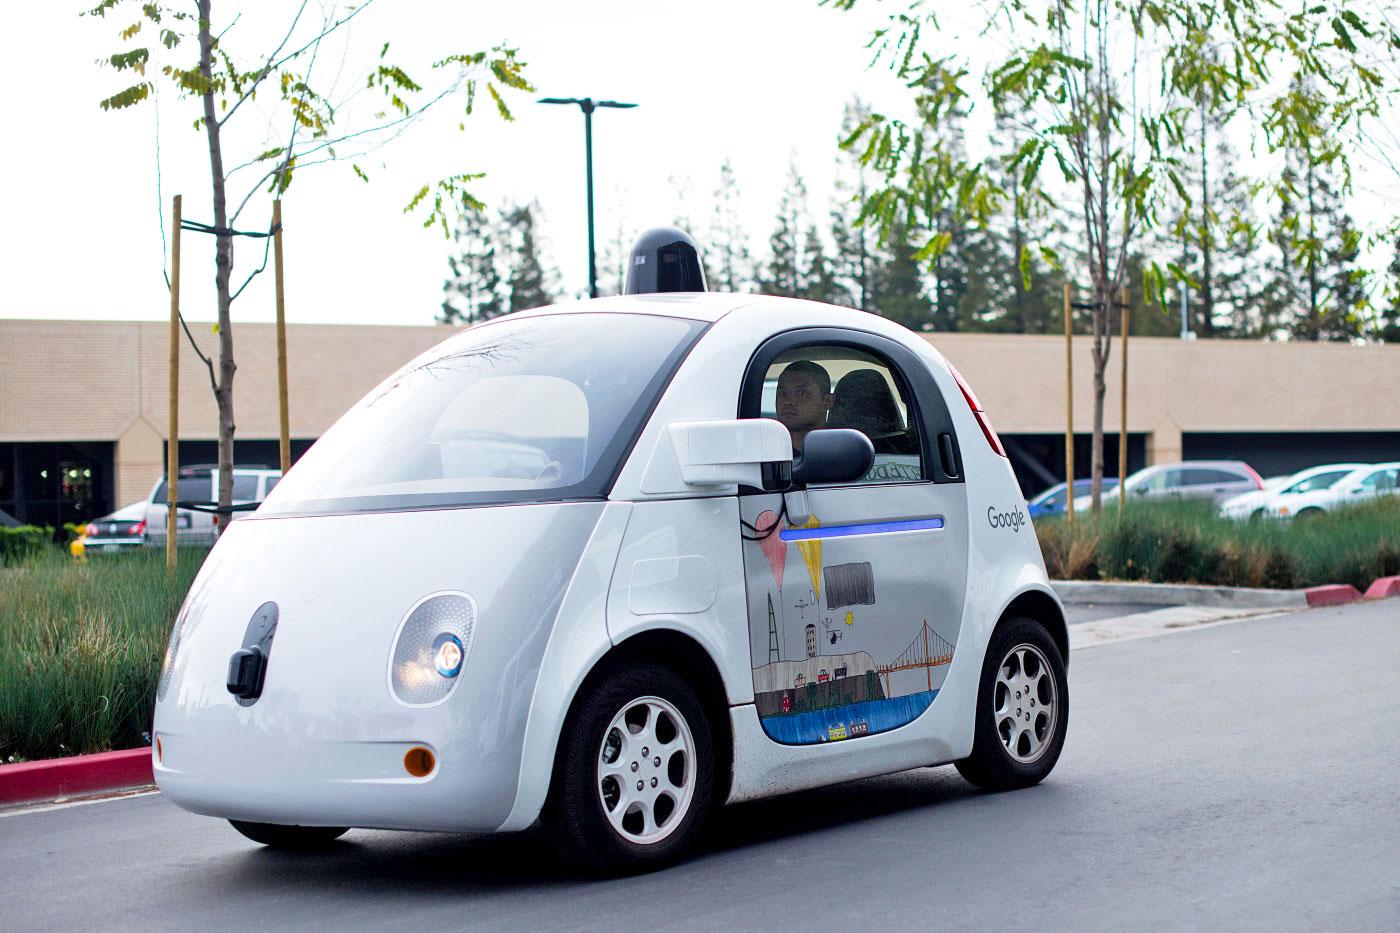 More information about "H Ford, η Google και η Uber σχηματίζουν μια ομάδα για να  προωθήσουν τα αυτόνομα αυτοκίνητα"